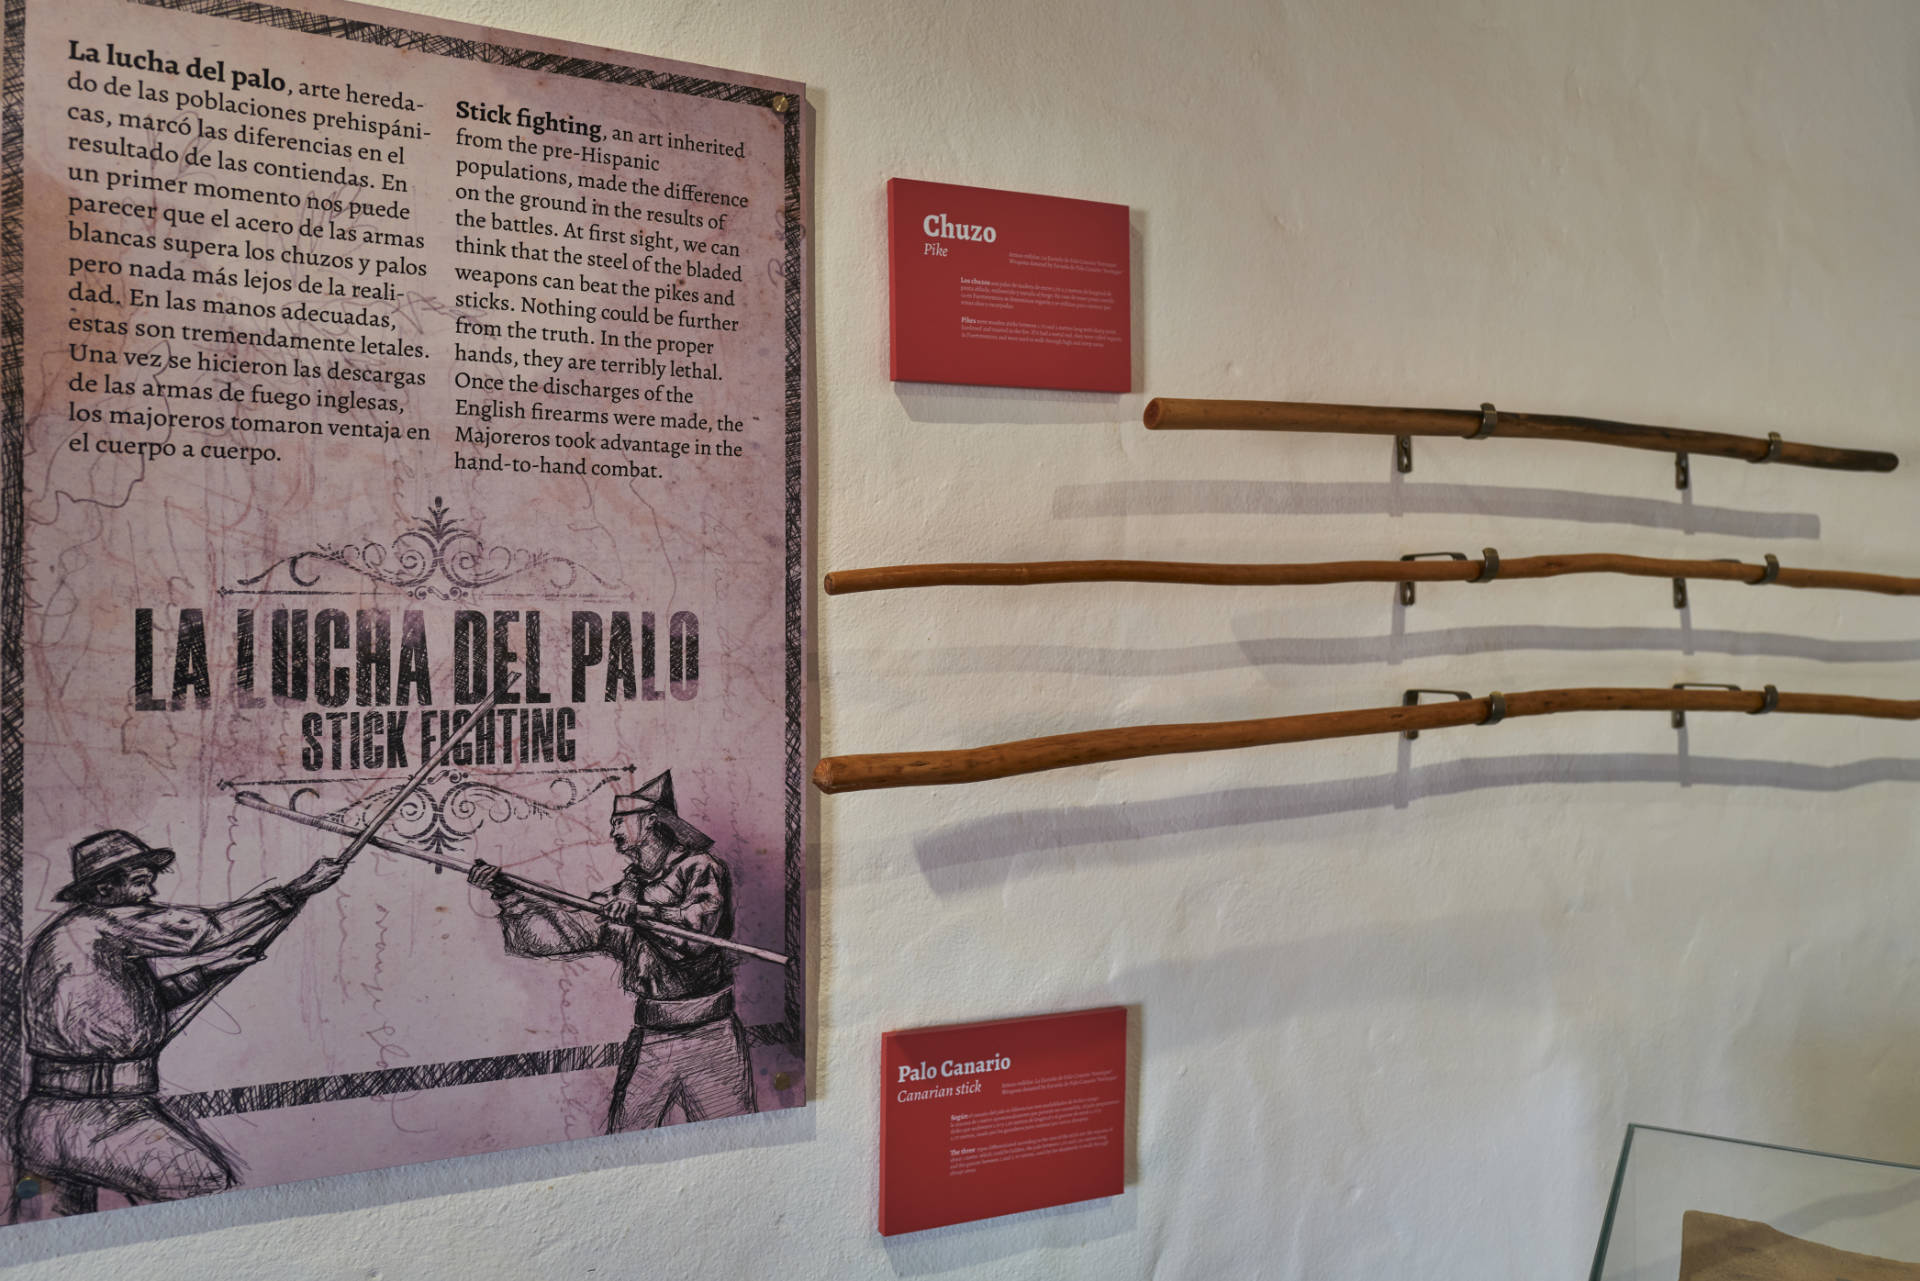 El Centro de Interpretación de las Batallas de El Cuchillete y Tamasite en Tuineje.